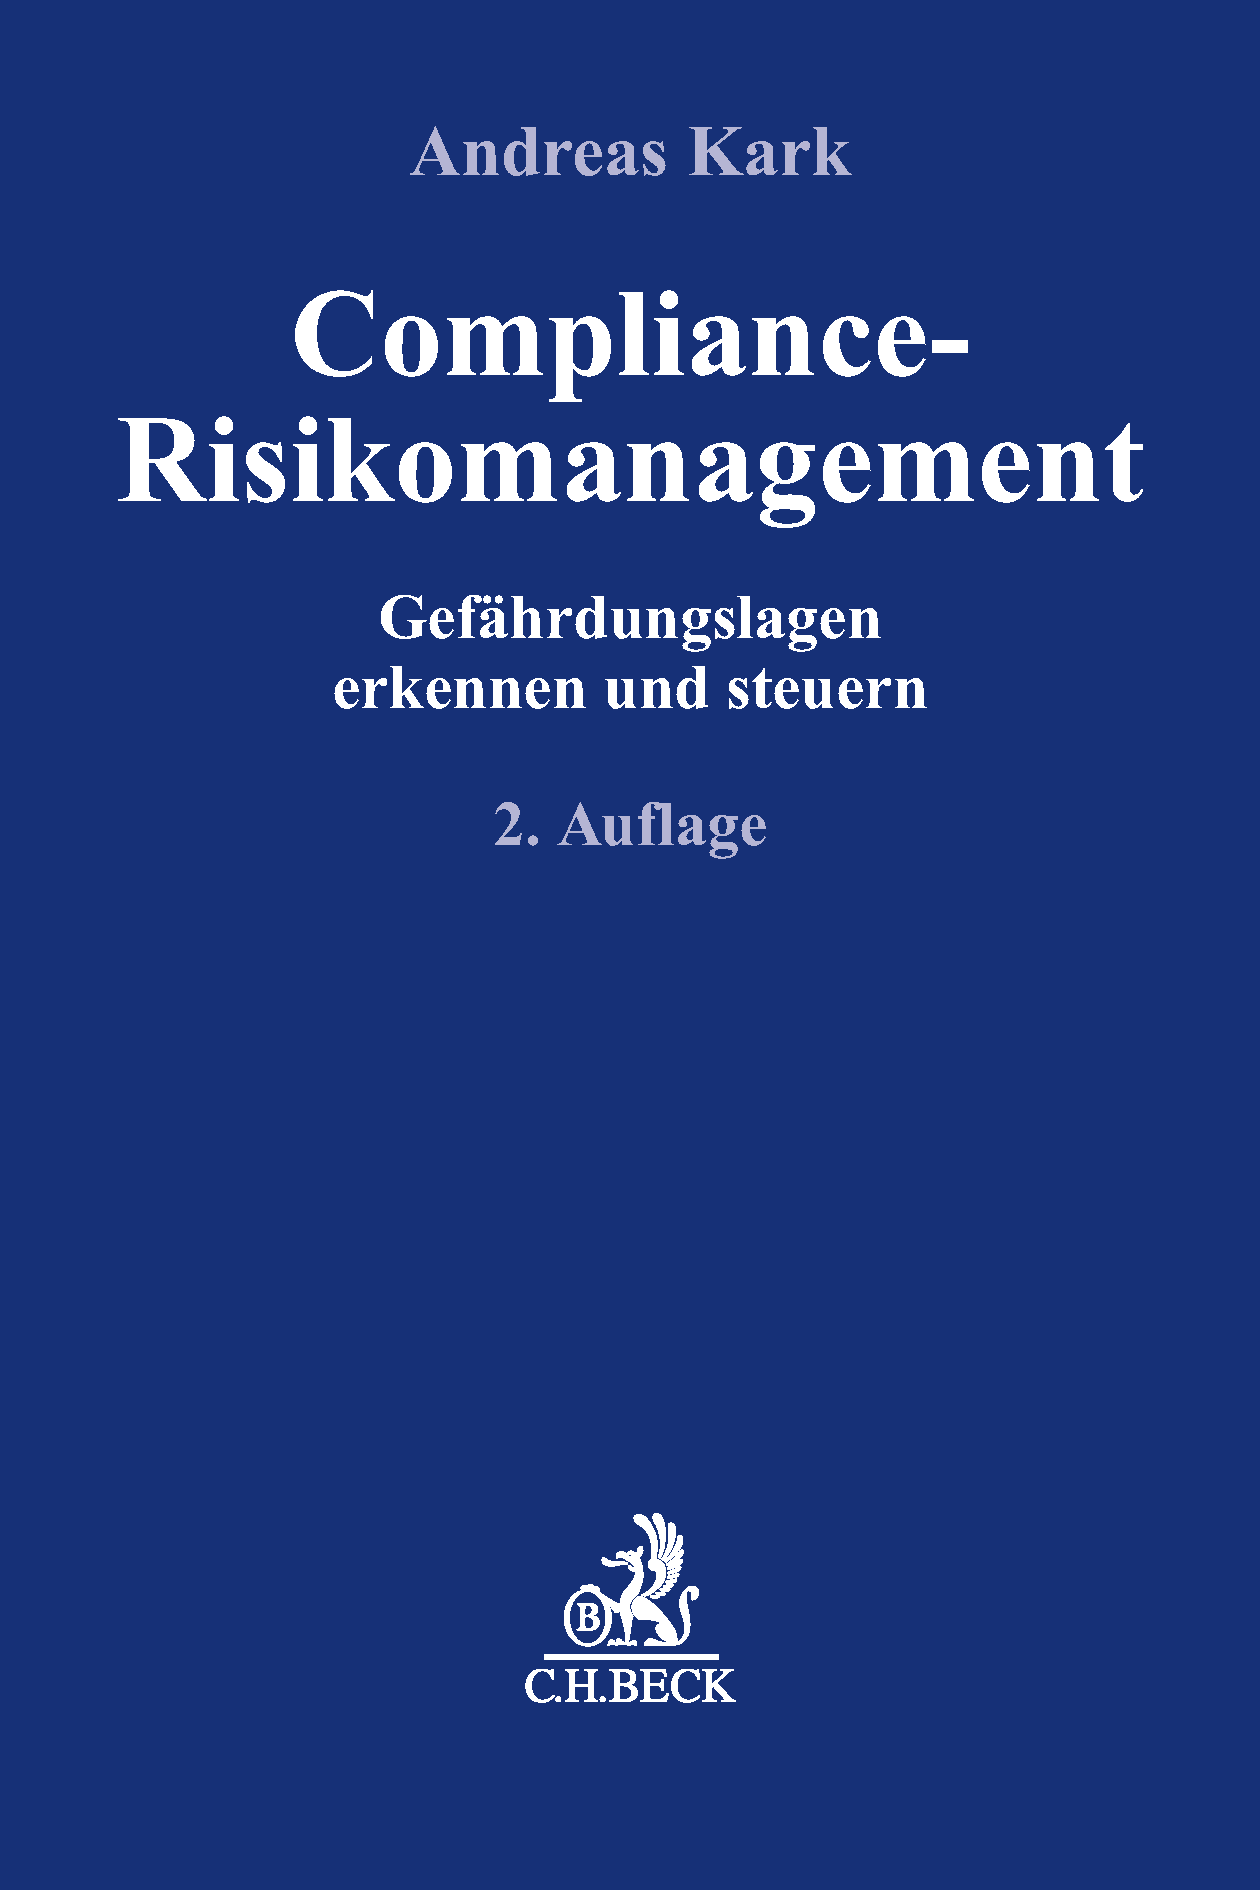 Compliance-Risikomanagement, 2. Aufl. 2019, erschienen beim Verlag C.H. Beck